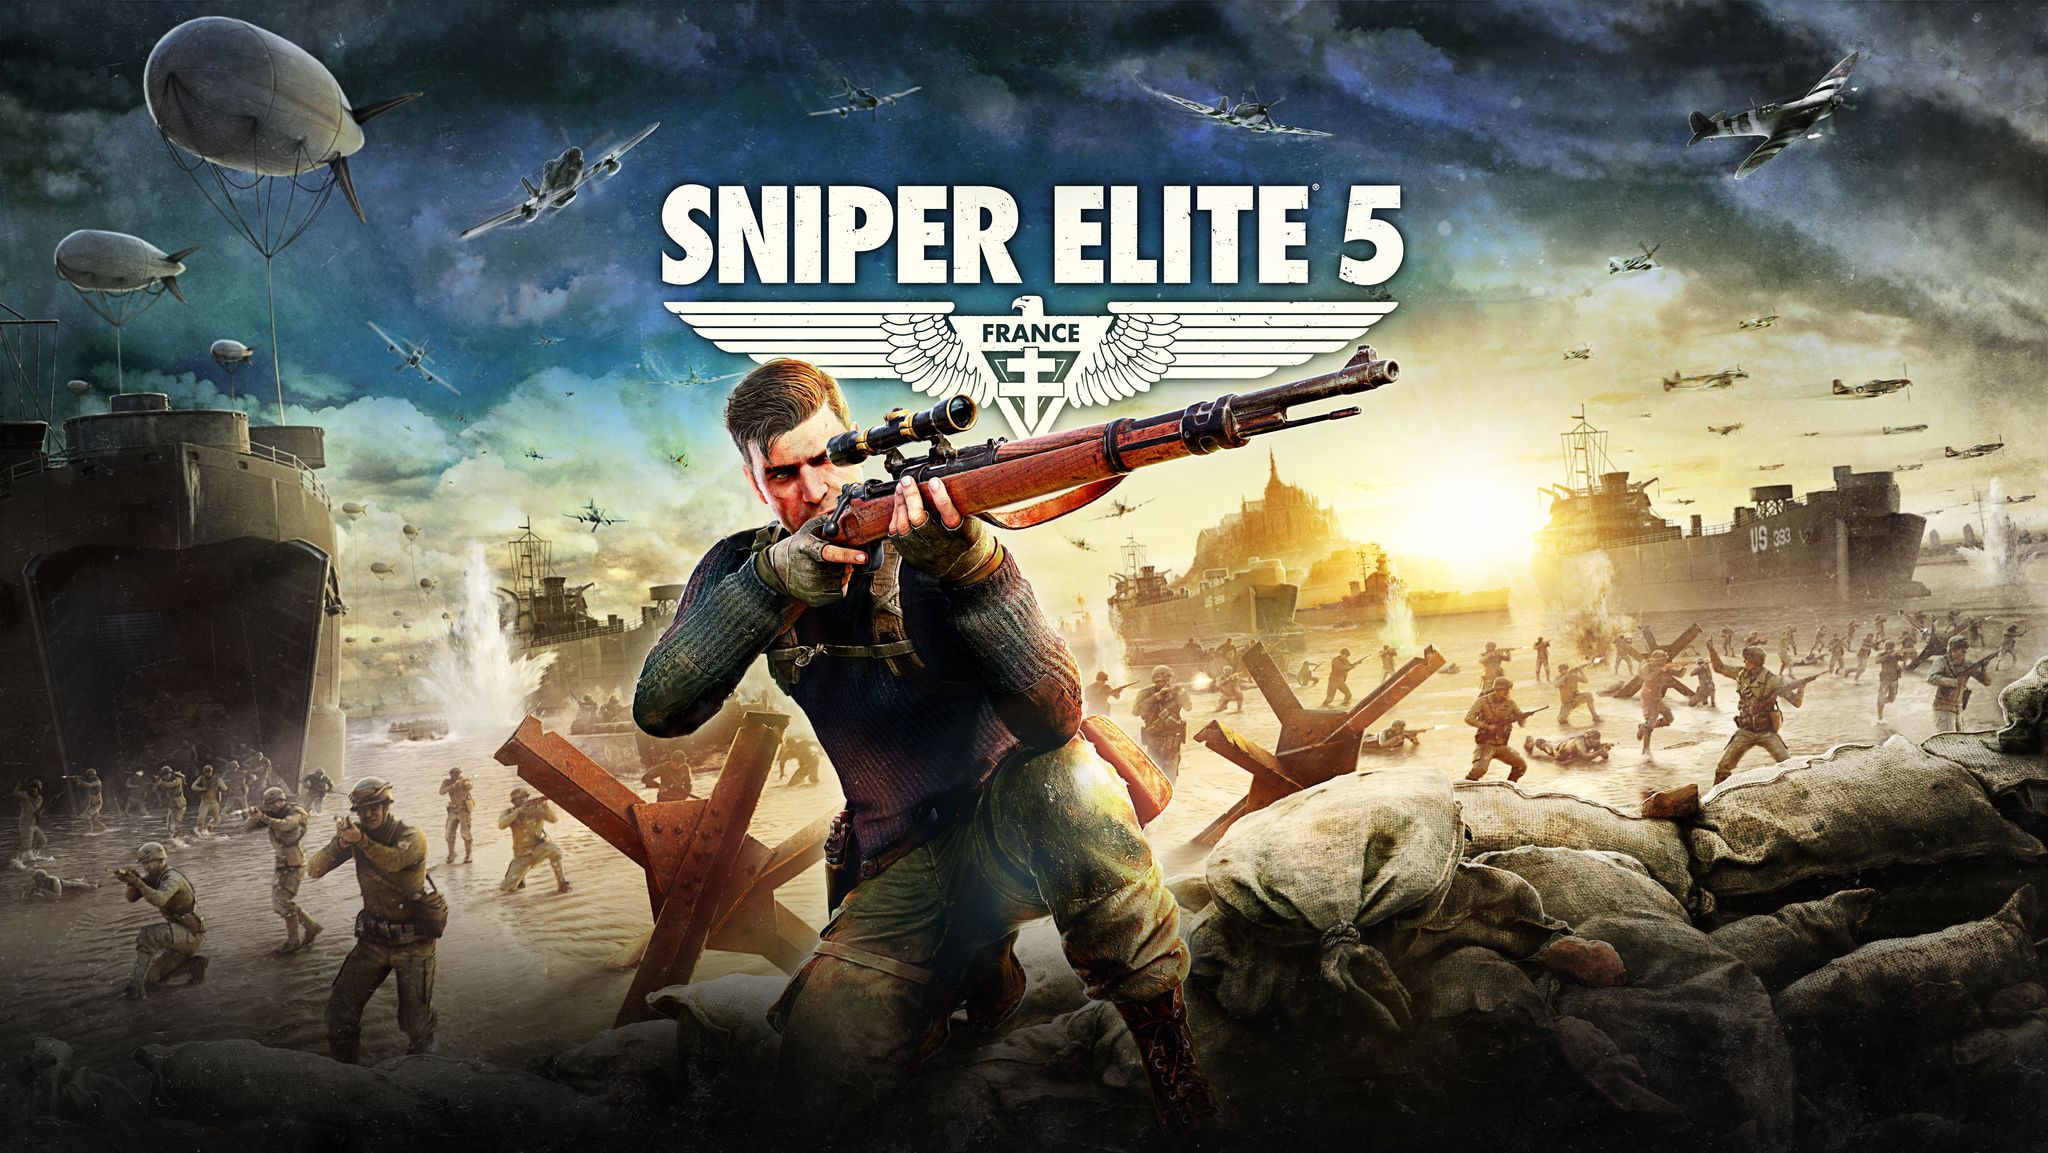 Descargar fondos de escritorio de Sniper Elite 5 HD